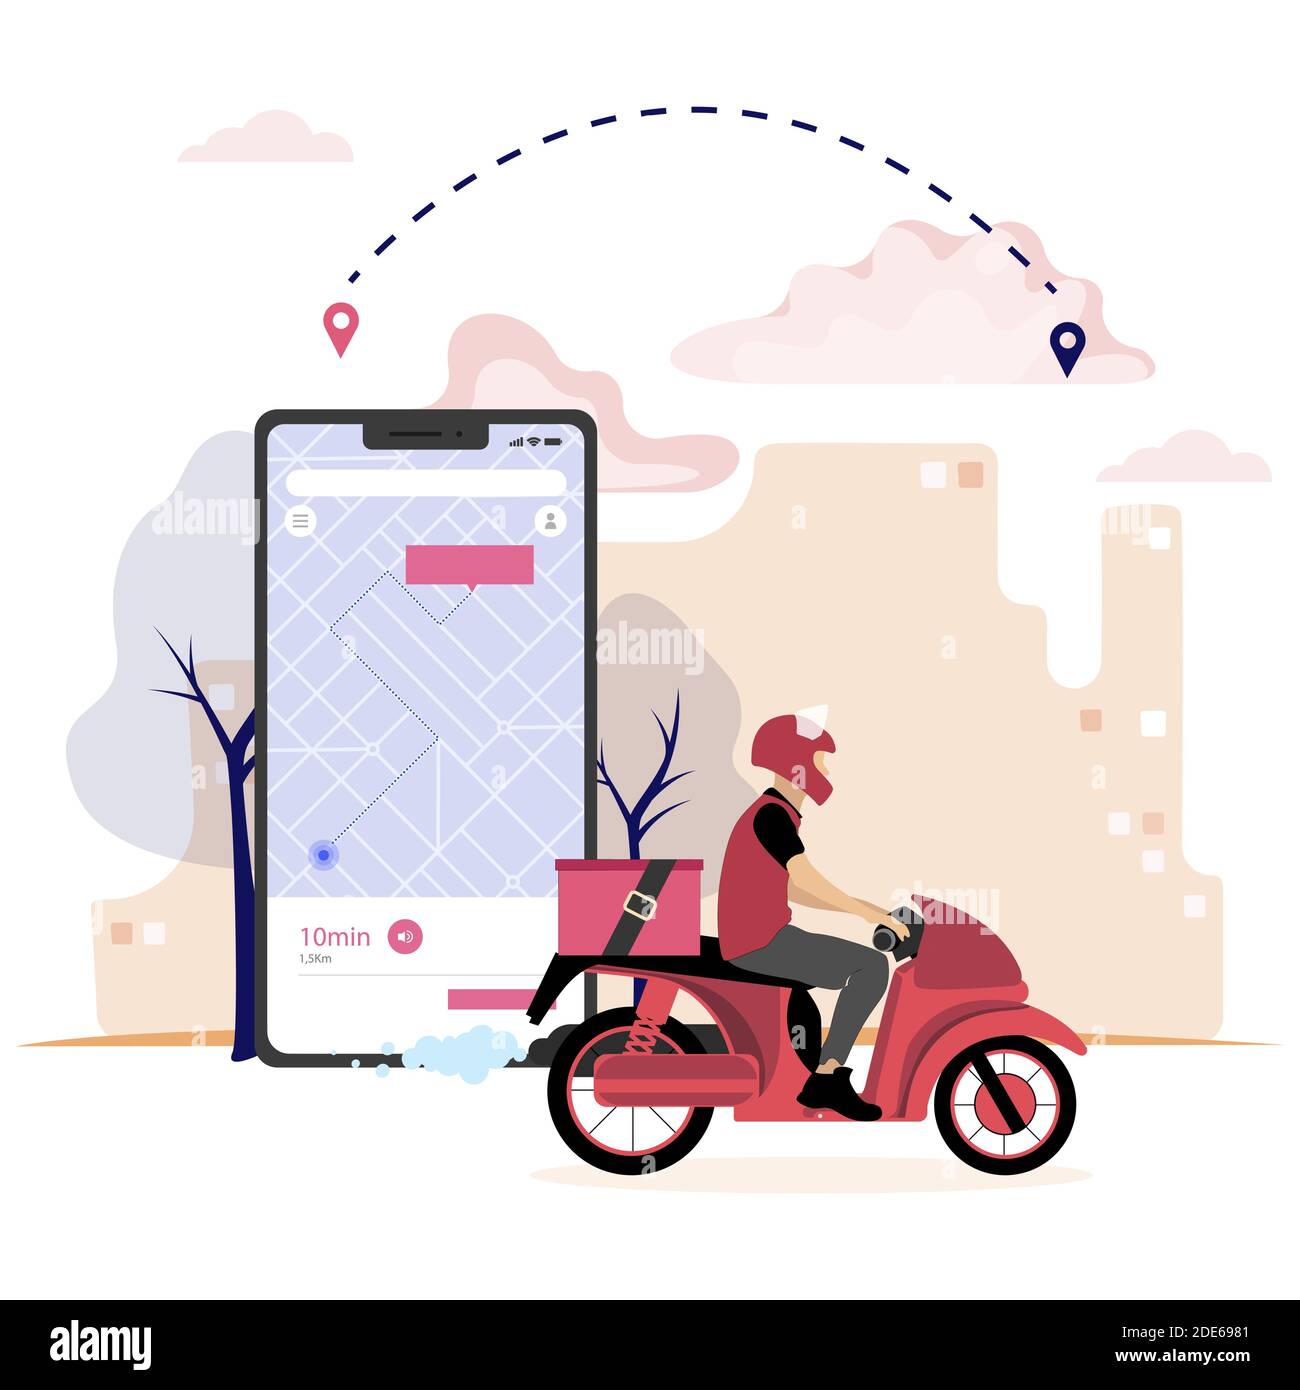 Lieferung Pizza Fast Food durch mobile Anwendung. Fahrer auf Moped, Tracking-Kurier auf der Karte, Motorrad-Stadtfahrt vom Restaurant, Service-Lieferung. Vect Stock Vektor